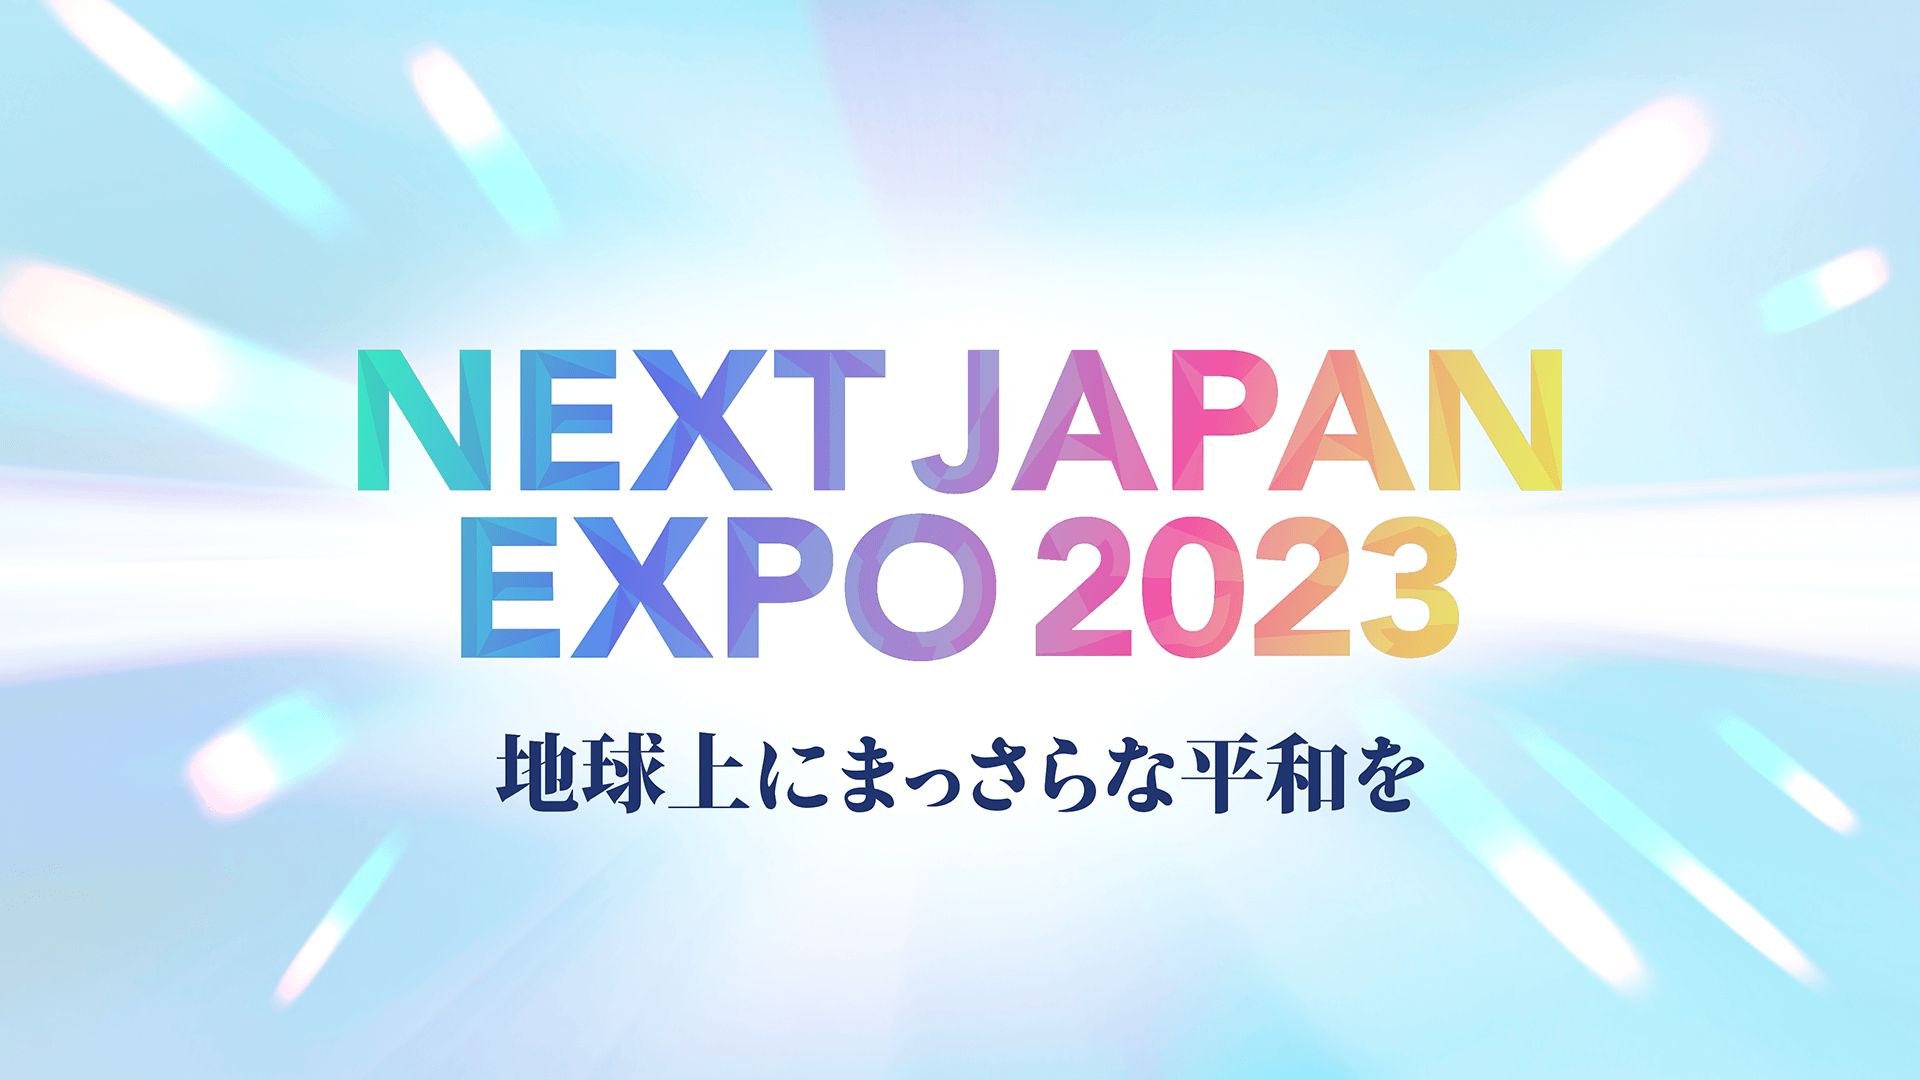 【イベント】NEXT JAPAN EXPO 2023 地球上にまっさらな平和を